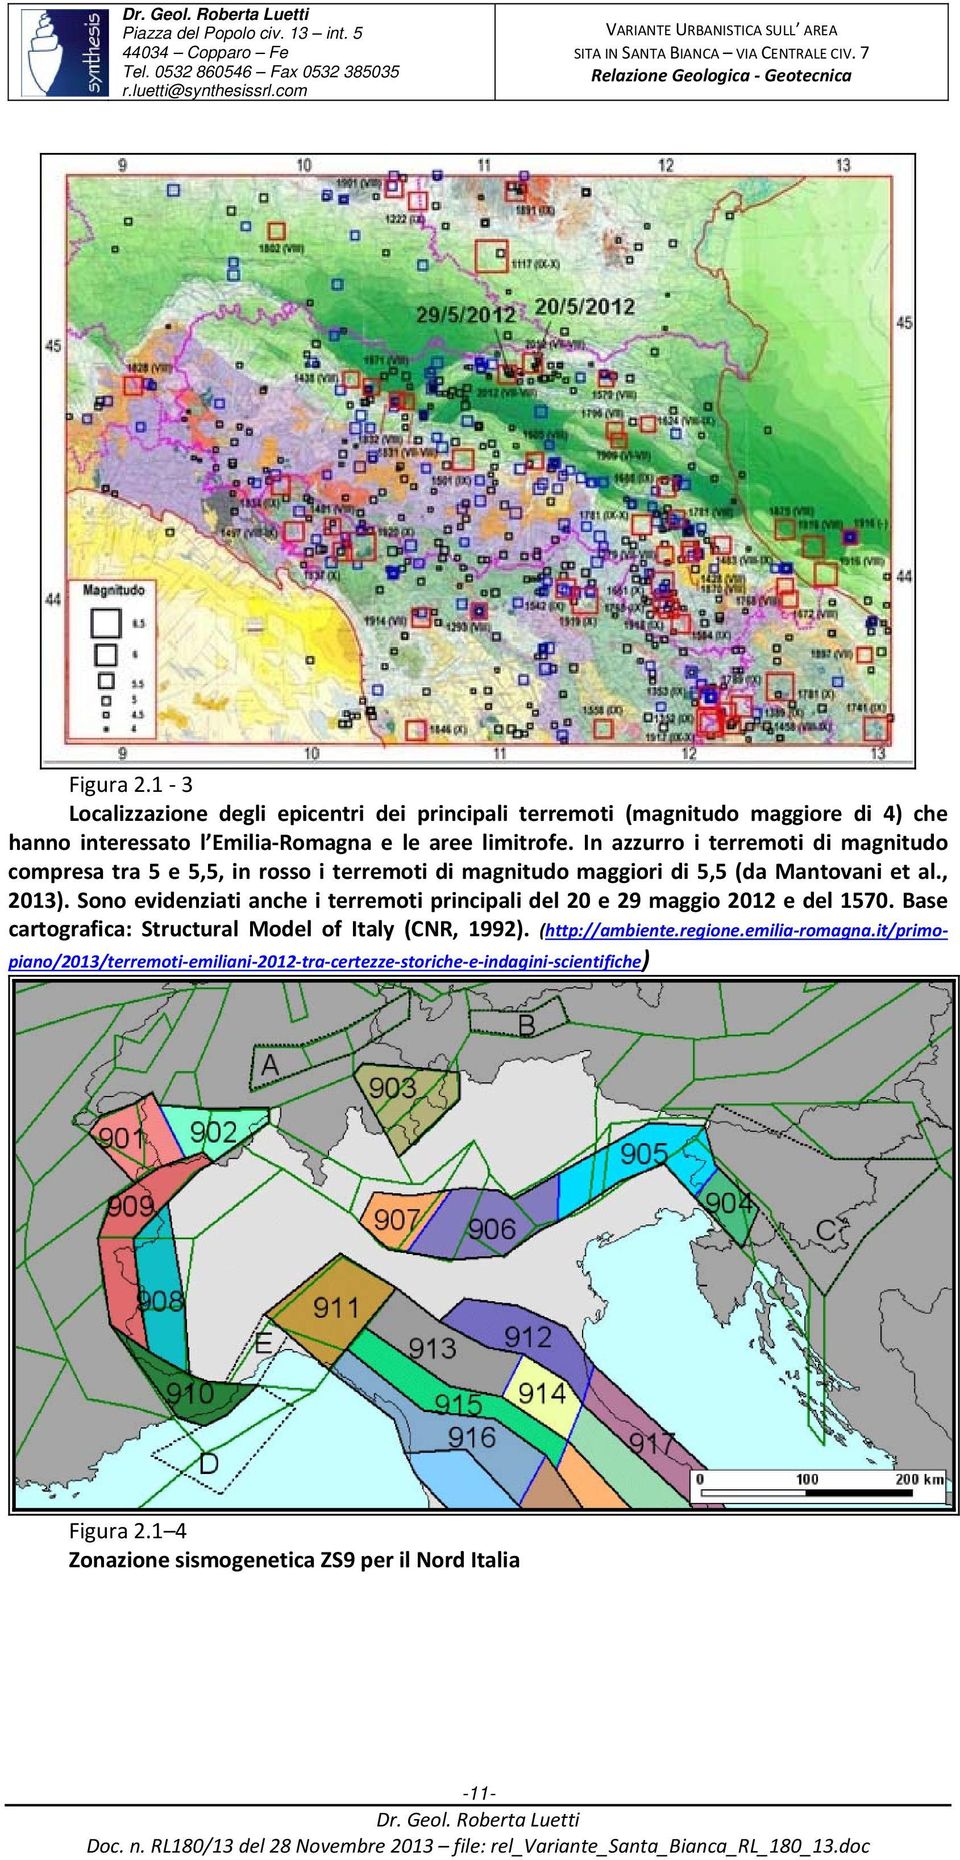 Sono evidenziati anche i terremoti principali del 20 e 29 maggio 2012 e del 1570. Base cartografica: Structural Model of Italy (CNR, 1992). (http://ambiente.